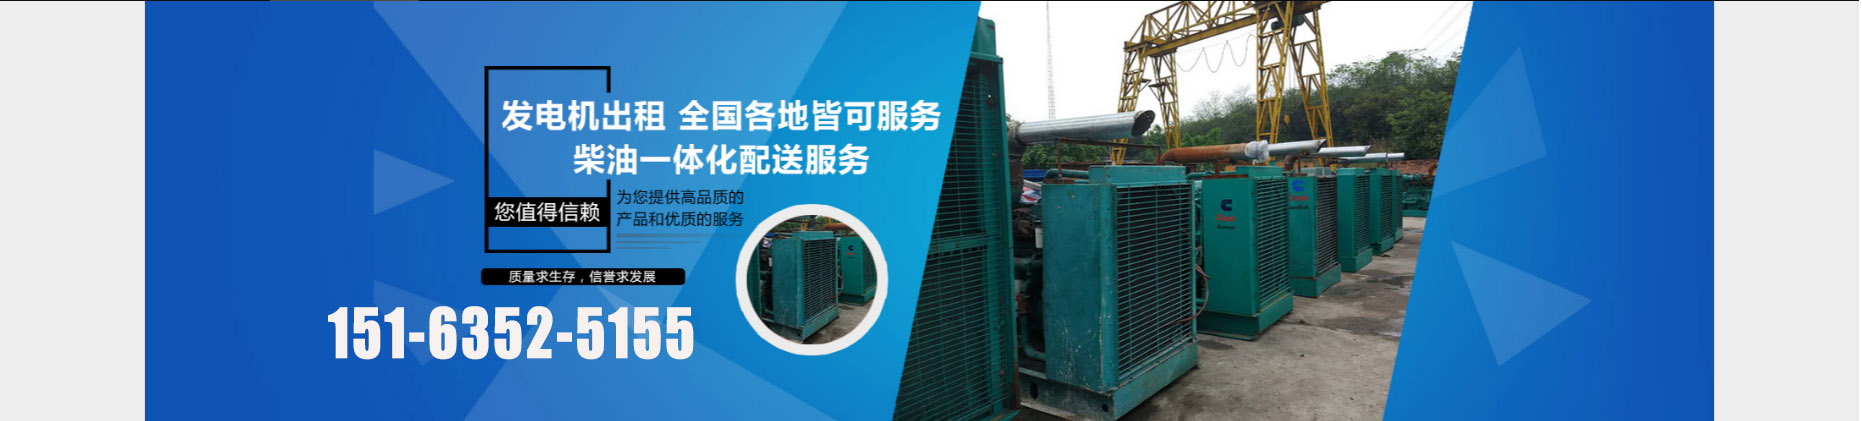 柴油发电机回收、芜湖本地柴油发电机回收、芜湖、芜湖柴油发电机回收